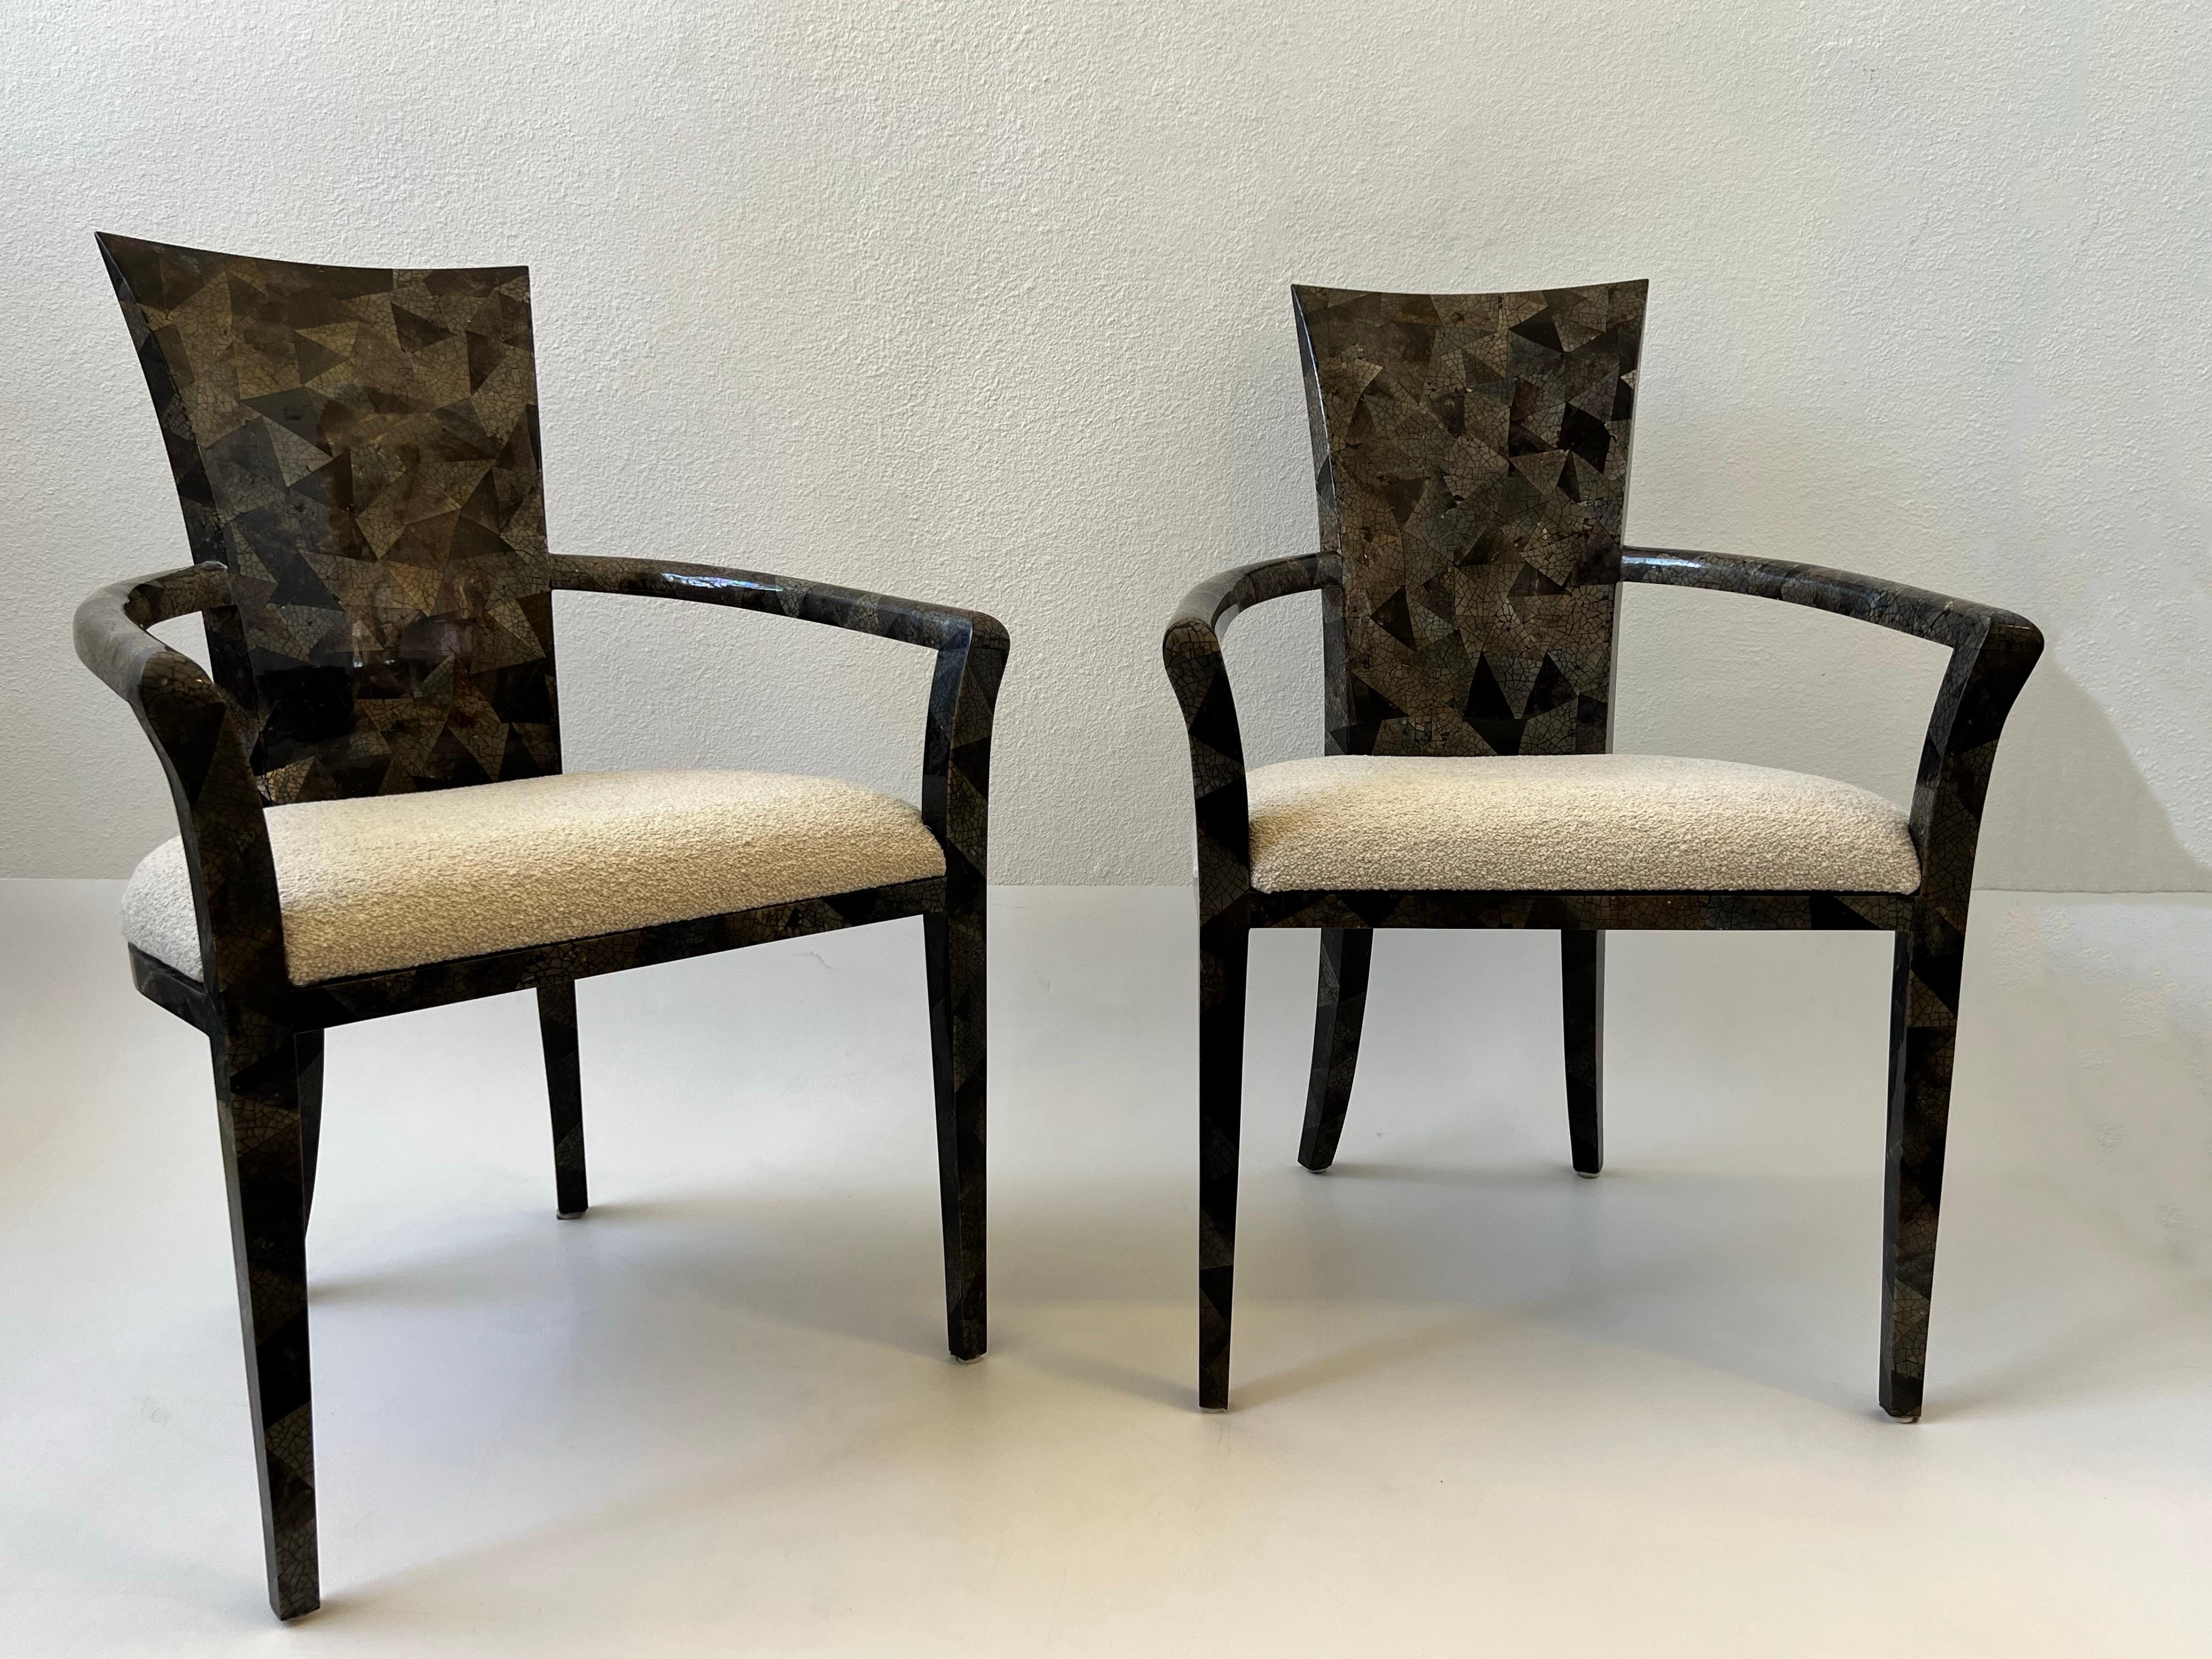 1980er Jahre Glamouröser Satz von sechs Esszimmerstühlen von Marquis Collection'S aus Beverly Hills mit gekräuselter Federschale und Boucle. 
Das Set besteht aus zwei Sesseln und vier Beistellstühlen. 
Gefertigt aus Holz, überzogen mit gekräuselter